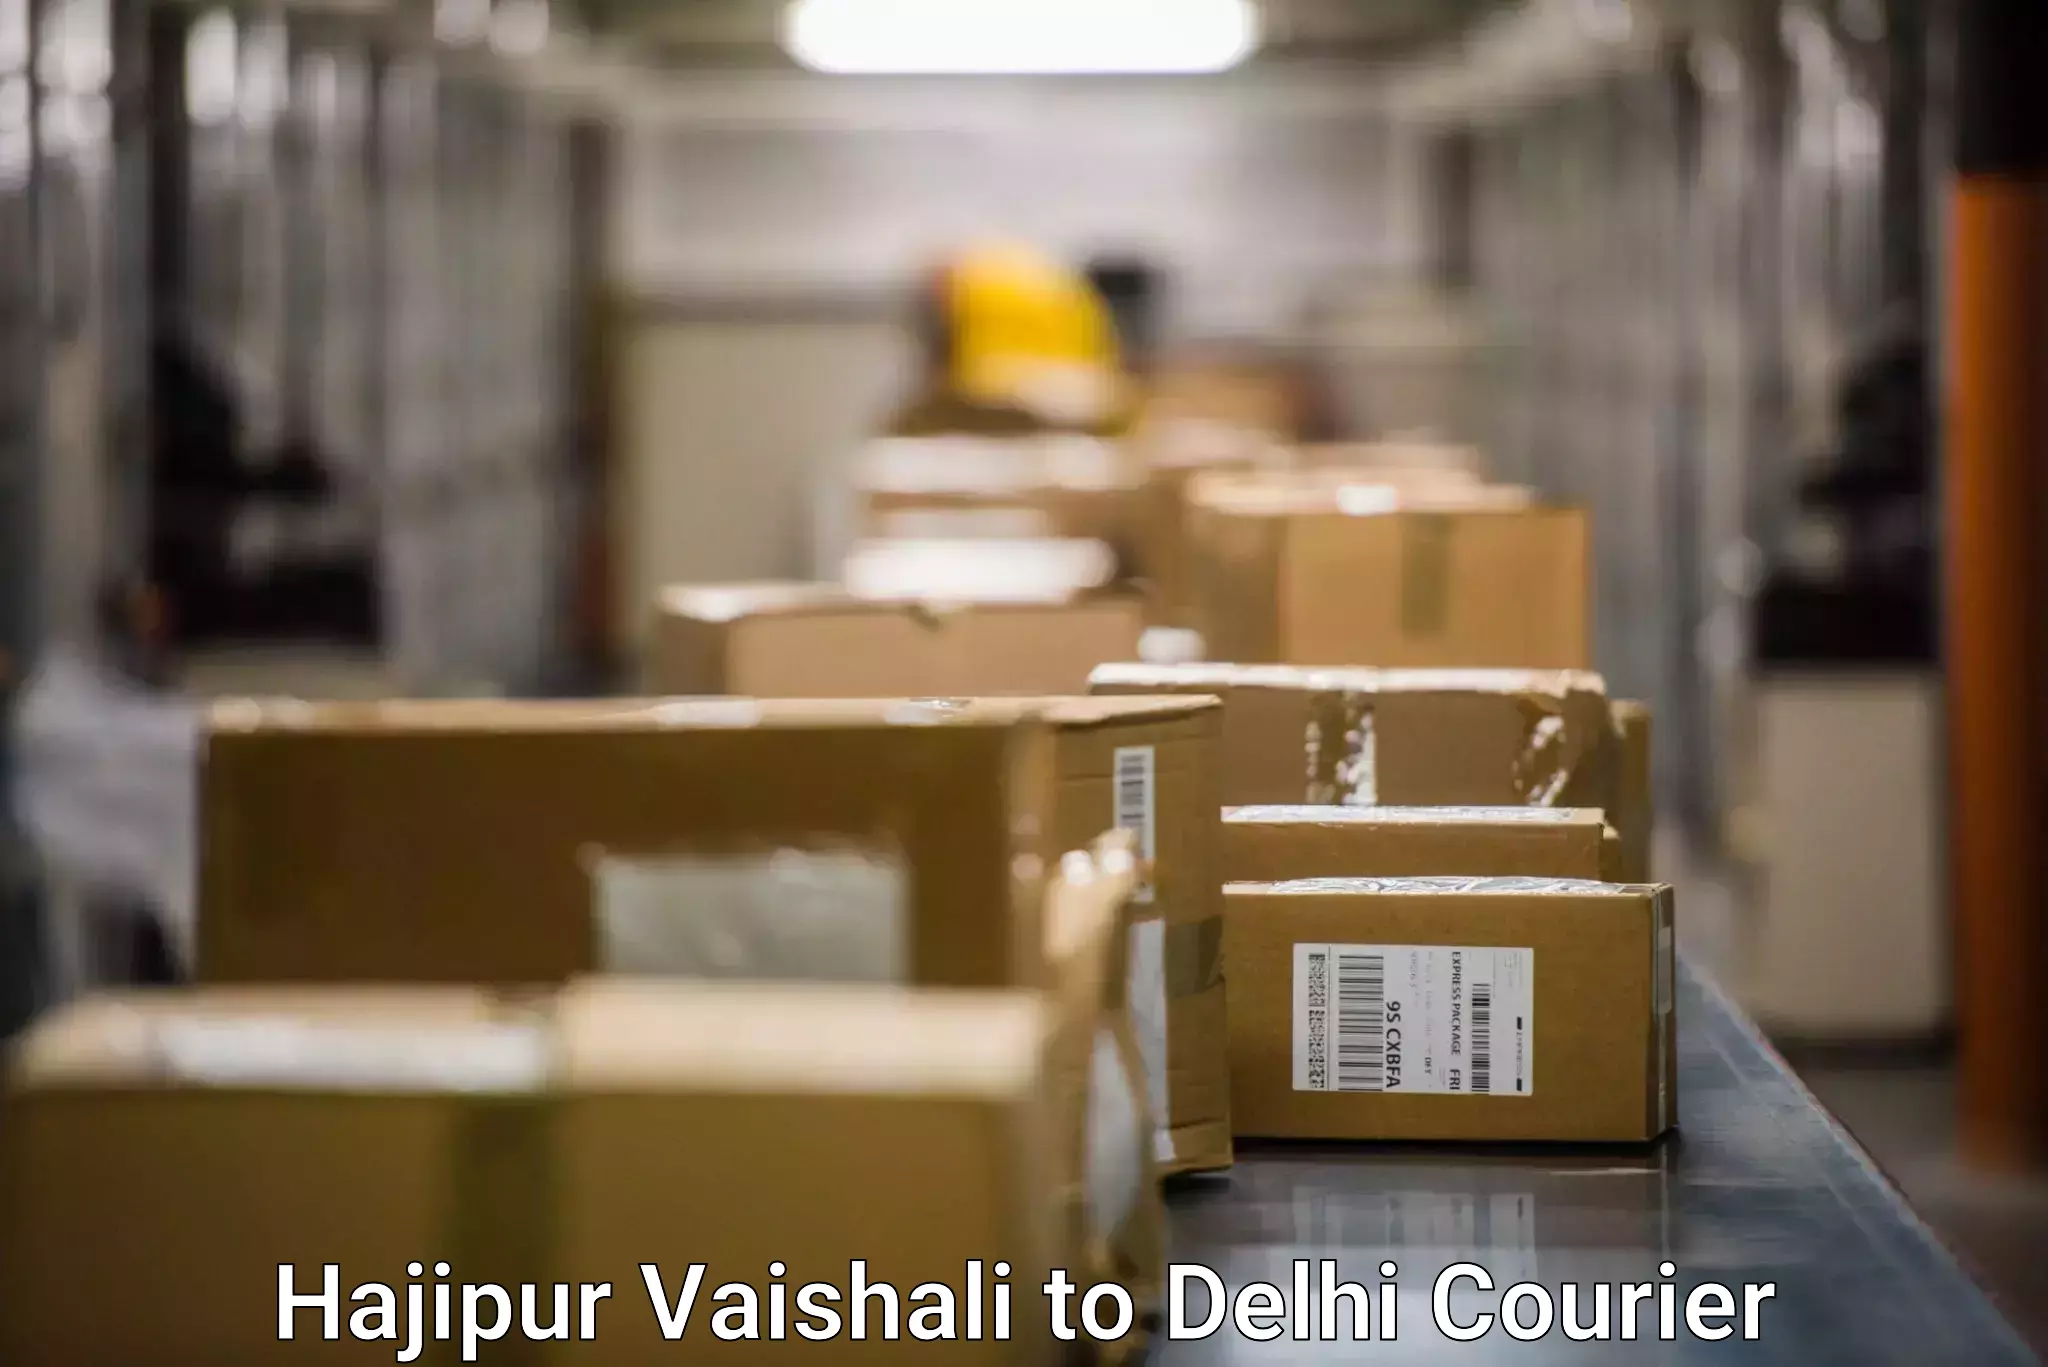 Return courier service Hajipur Vaishali to Jamia Hamdard New Delhi